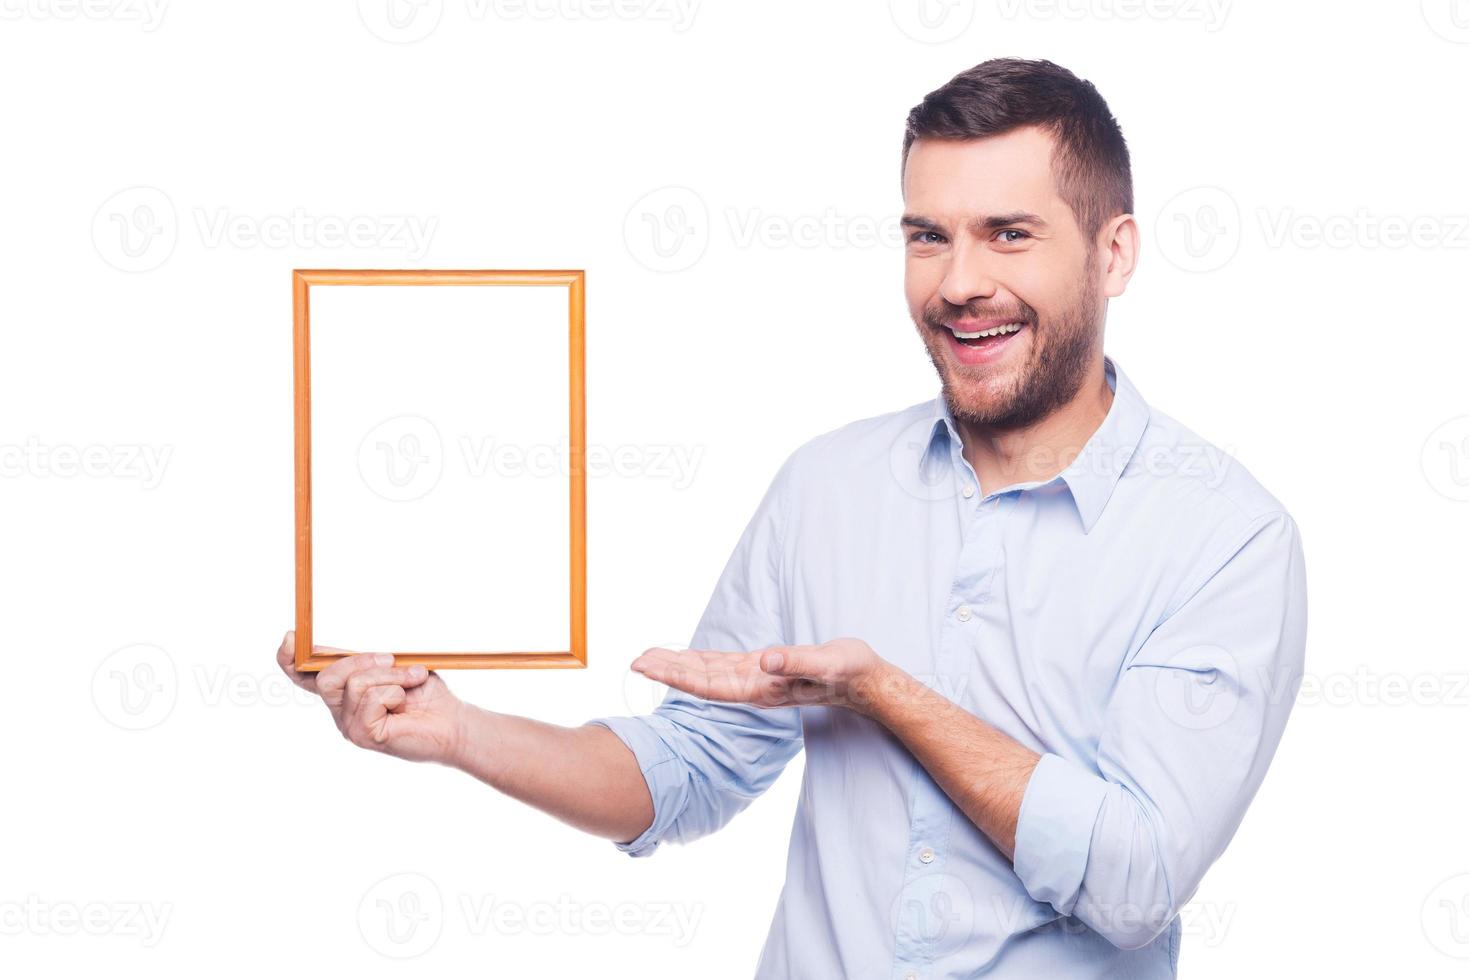 copie el espacio en el marco de la imagen. un joven guapo con camisa sosteniendo un marco de fotos y apuntándolo con una sonrisa mientras se enfrenta a un fondo blanco